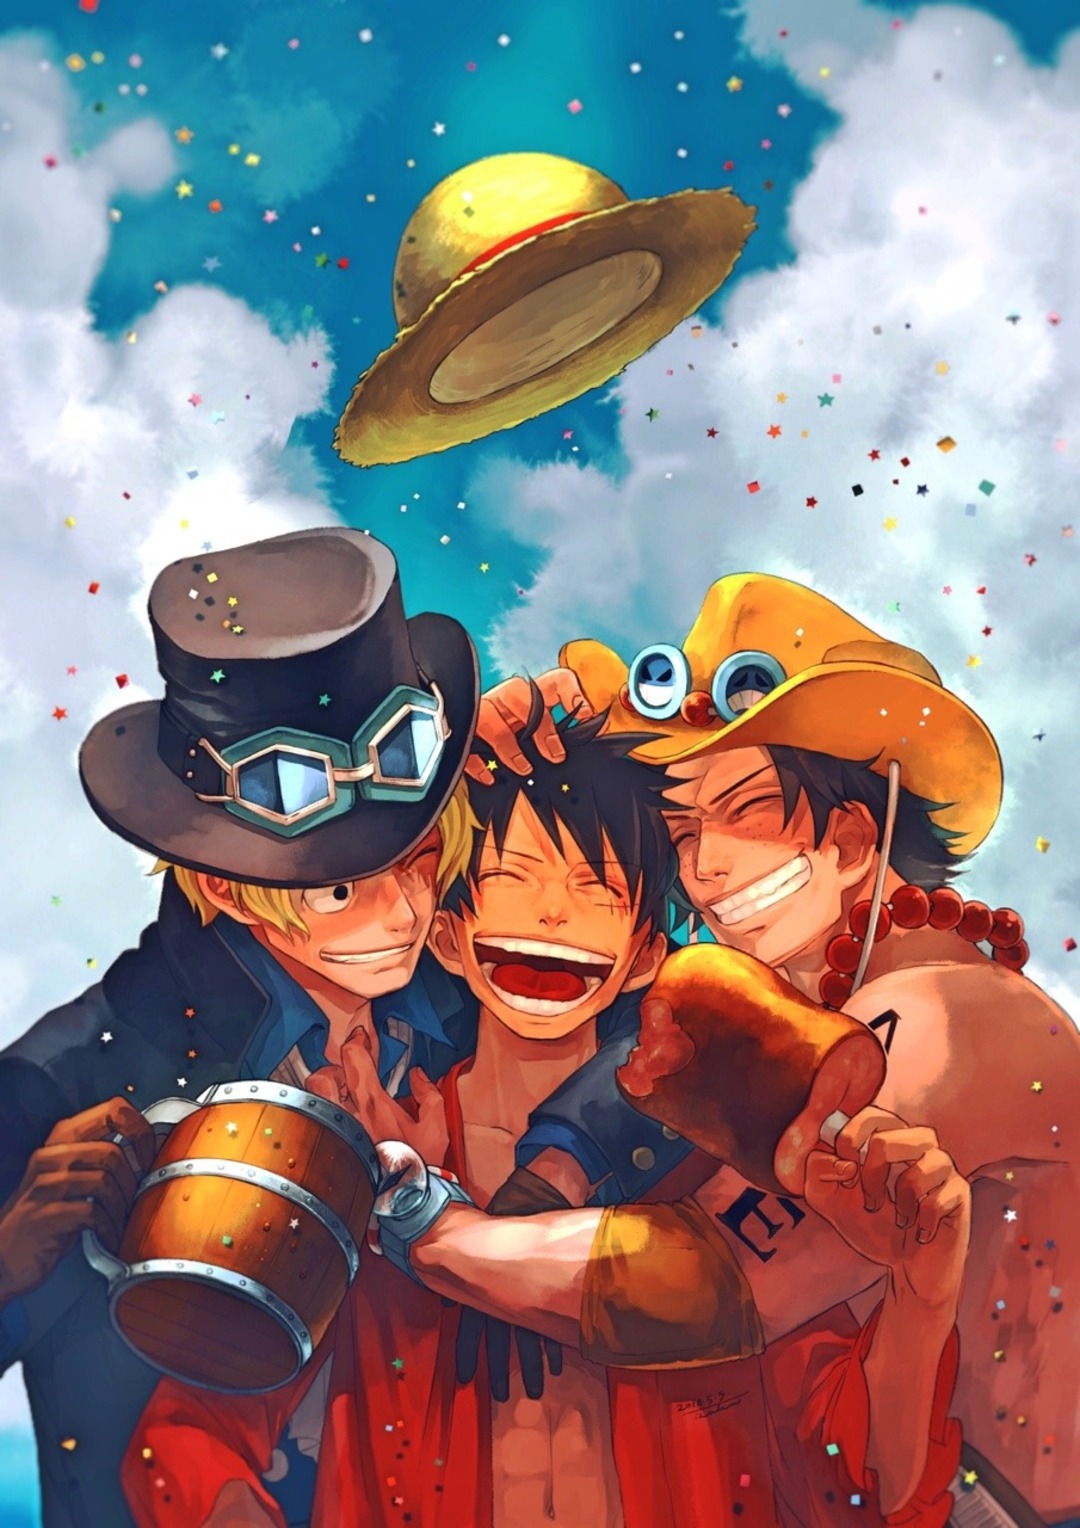 Luffy Mũ Rơm: Với chiếc mũ Rơm trên đầu, Luffy đã trở thành biểu tượng quen thuộc của anime One Piece. Tìm hiểu thêm về ý nghĩa đằng sau chiếc mũ này và tình yêu thương mà Luffy dành cho nó qua hình ảnh đầy đẹp mắt!